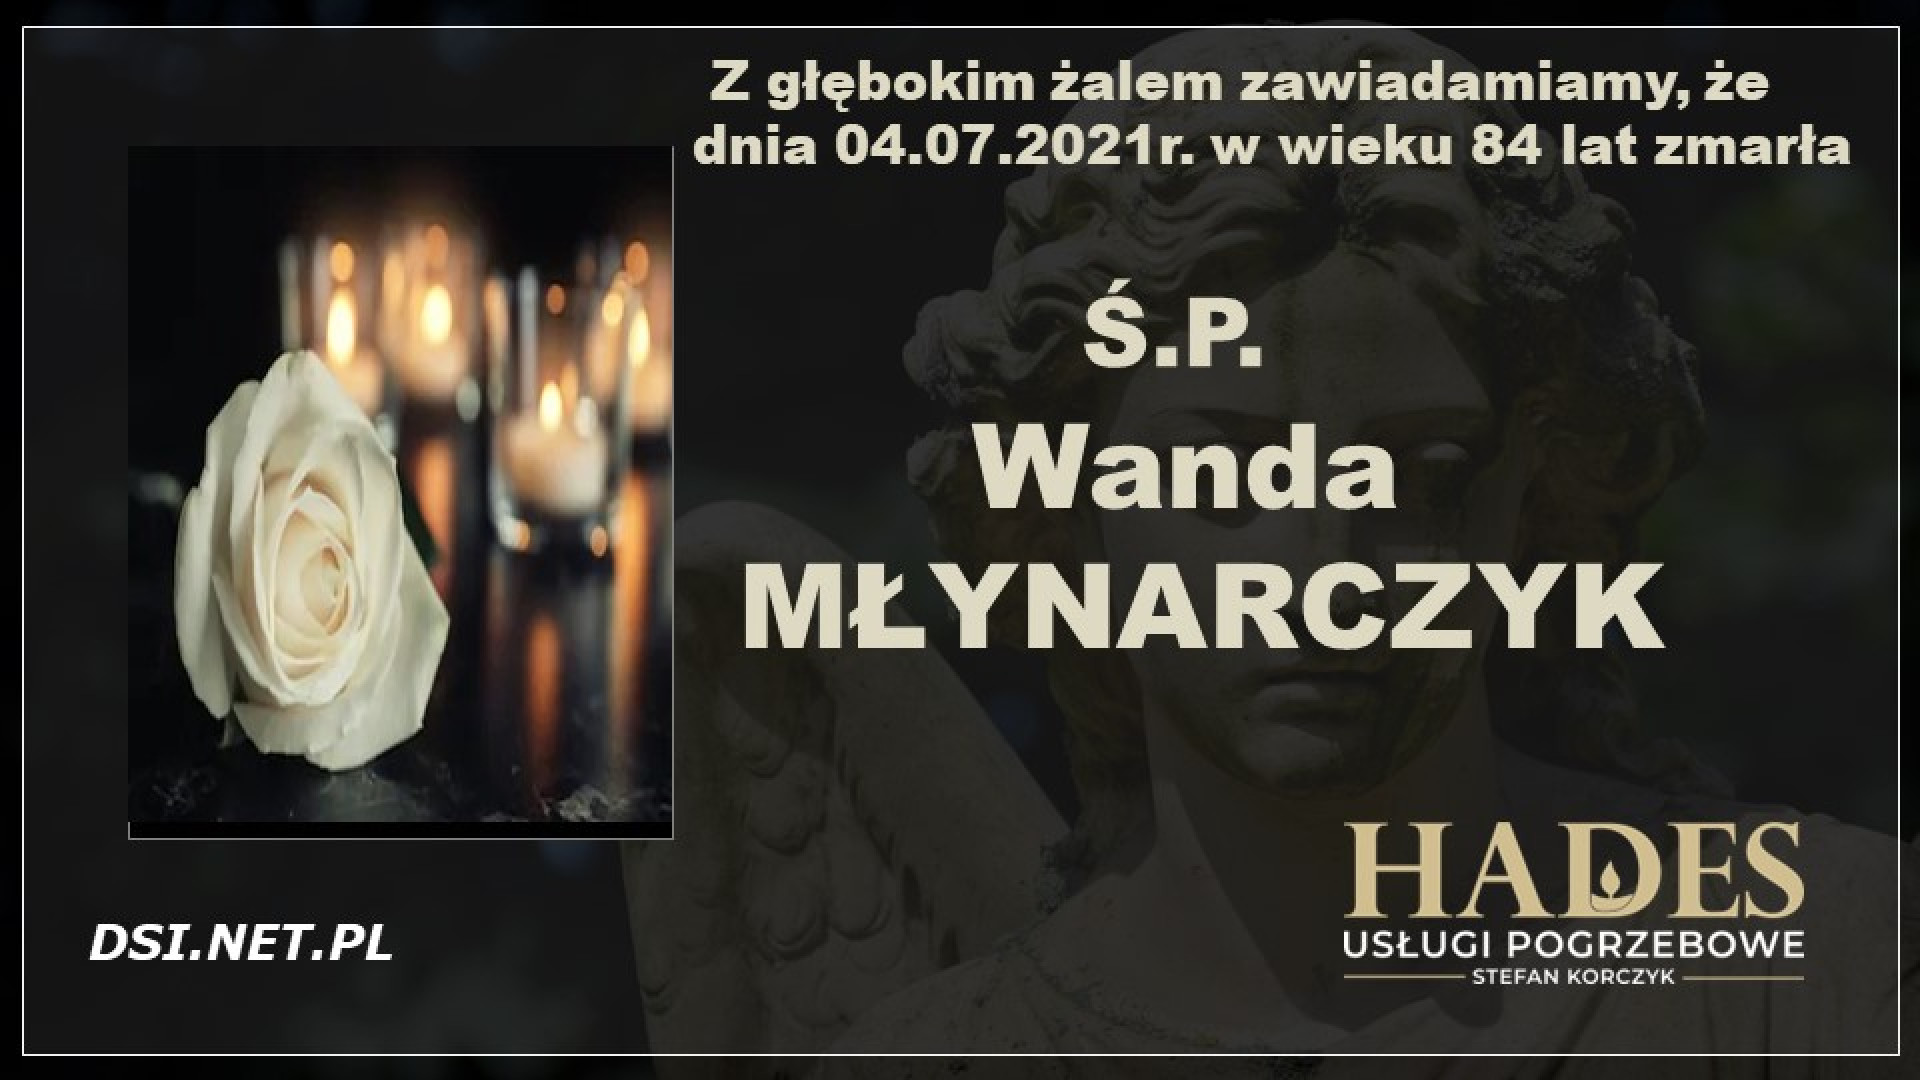 Ś.P. Wanda Młynarczyk